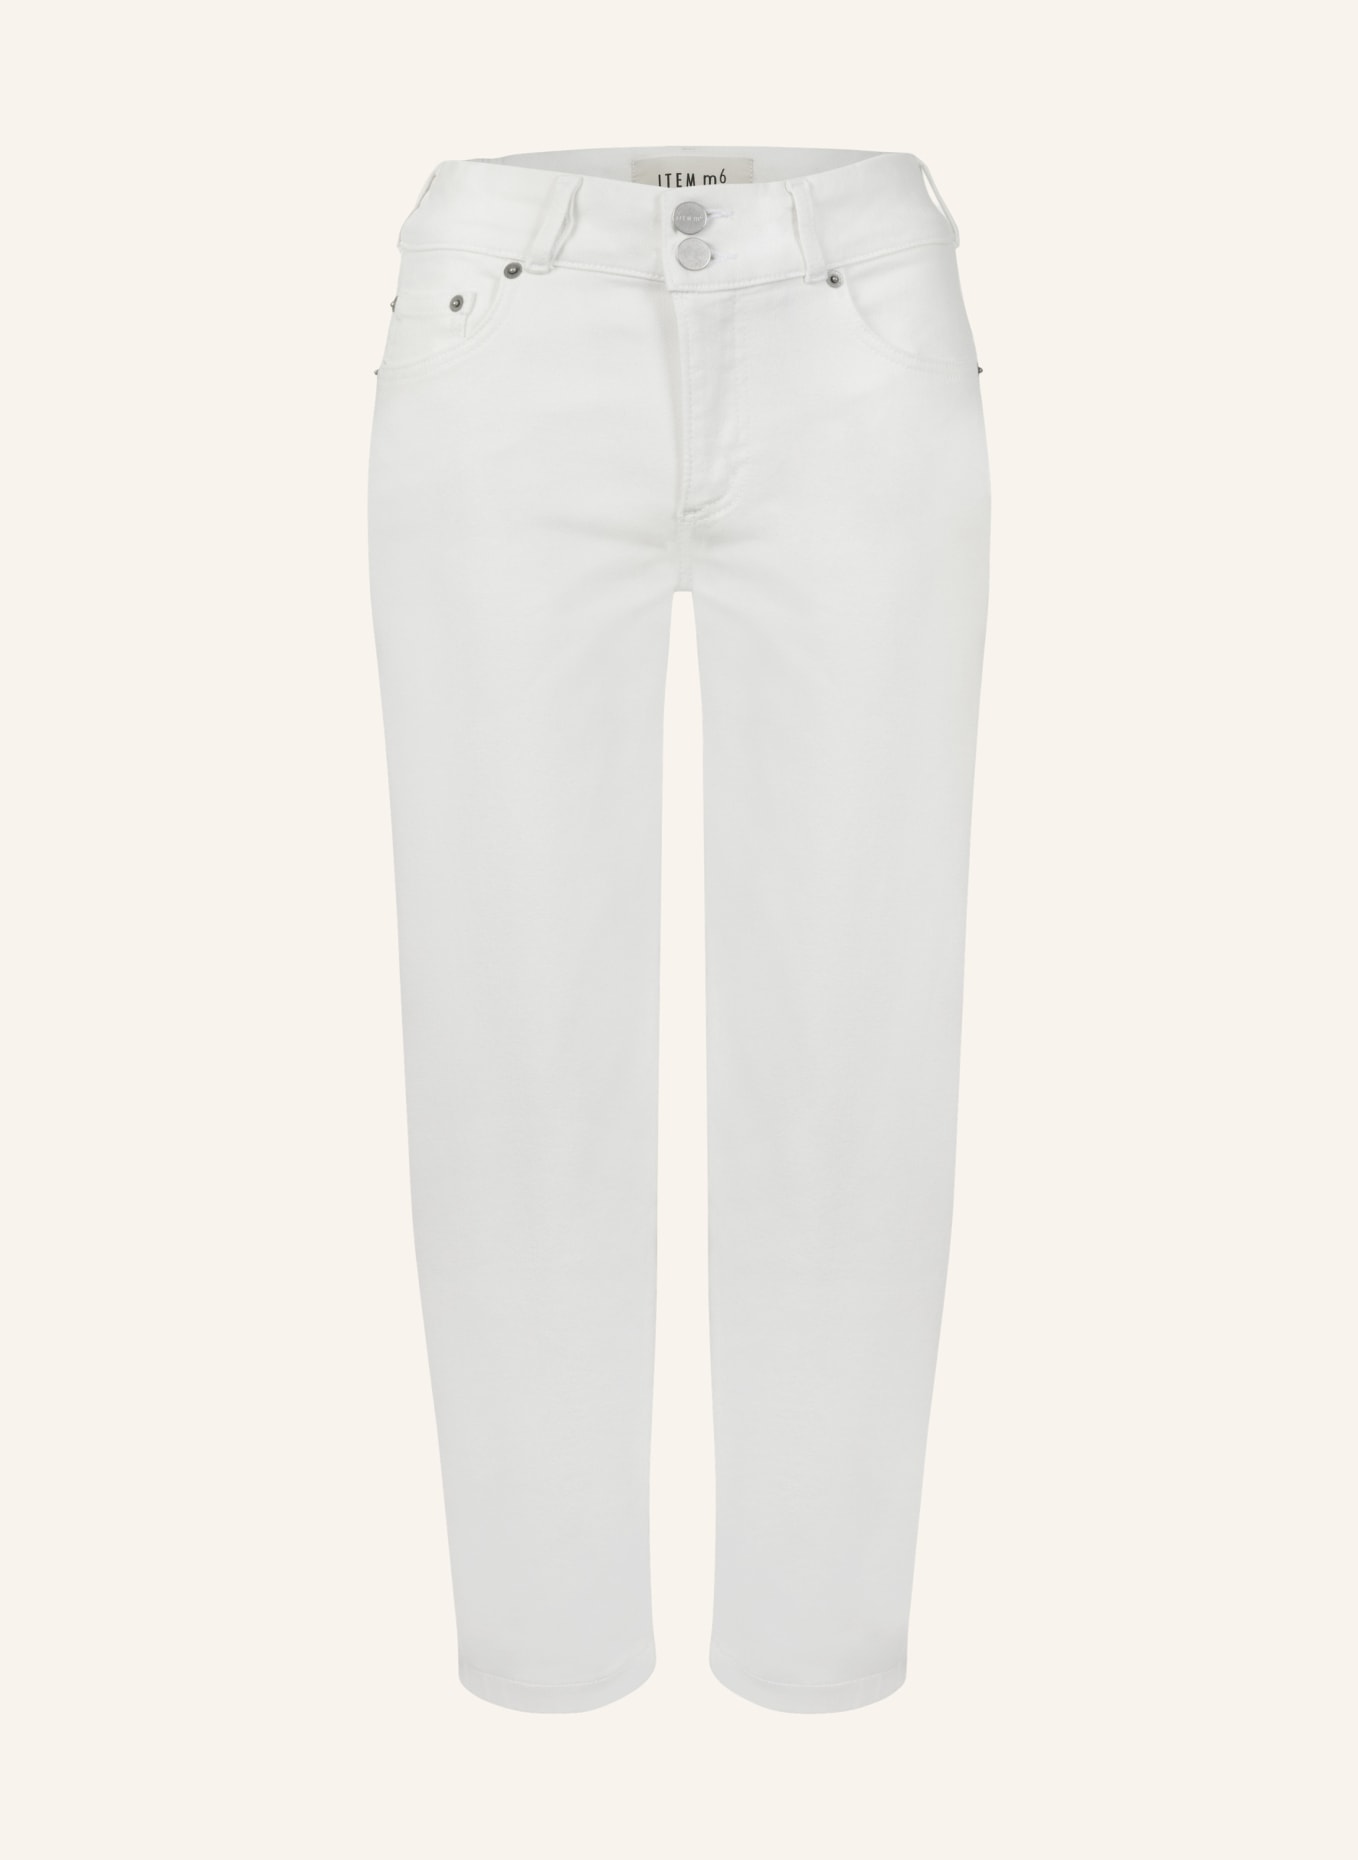 ITEM m6 Jeans-Culotte CROPPED HIGH RISE DENIM, Farbe: WEISS (Bild 1)